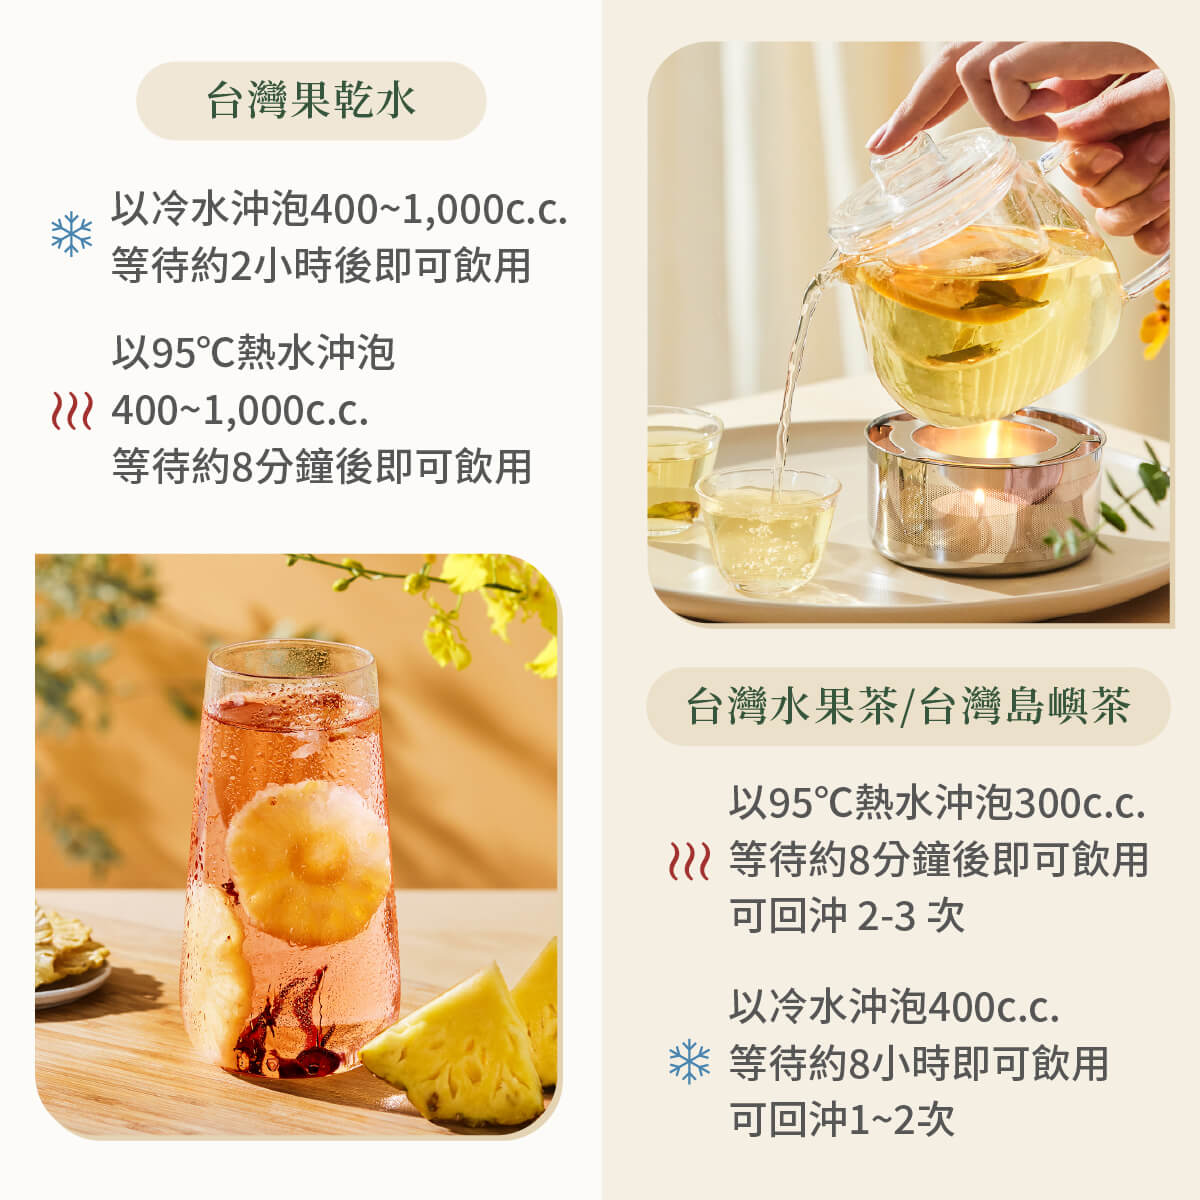 台灣果乾水、台灣水果茶及島嶼花茶原料圖示